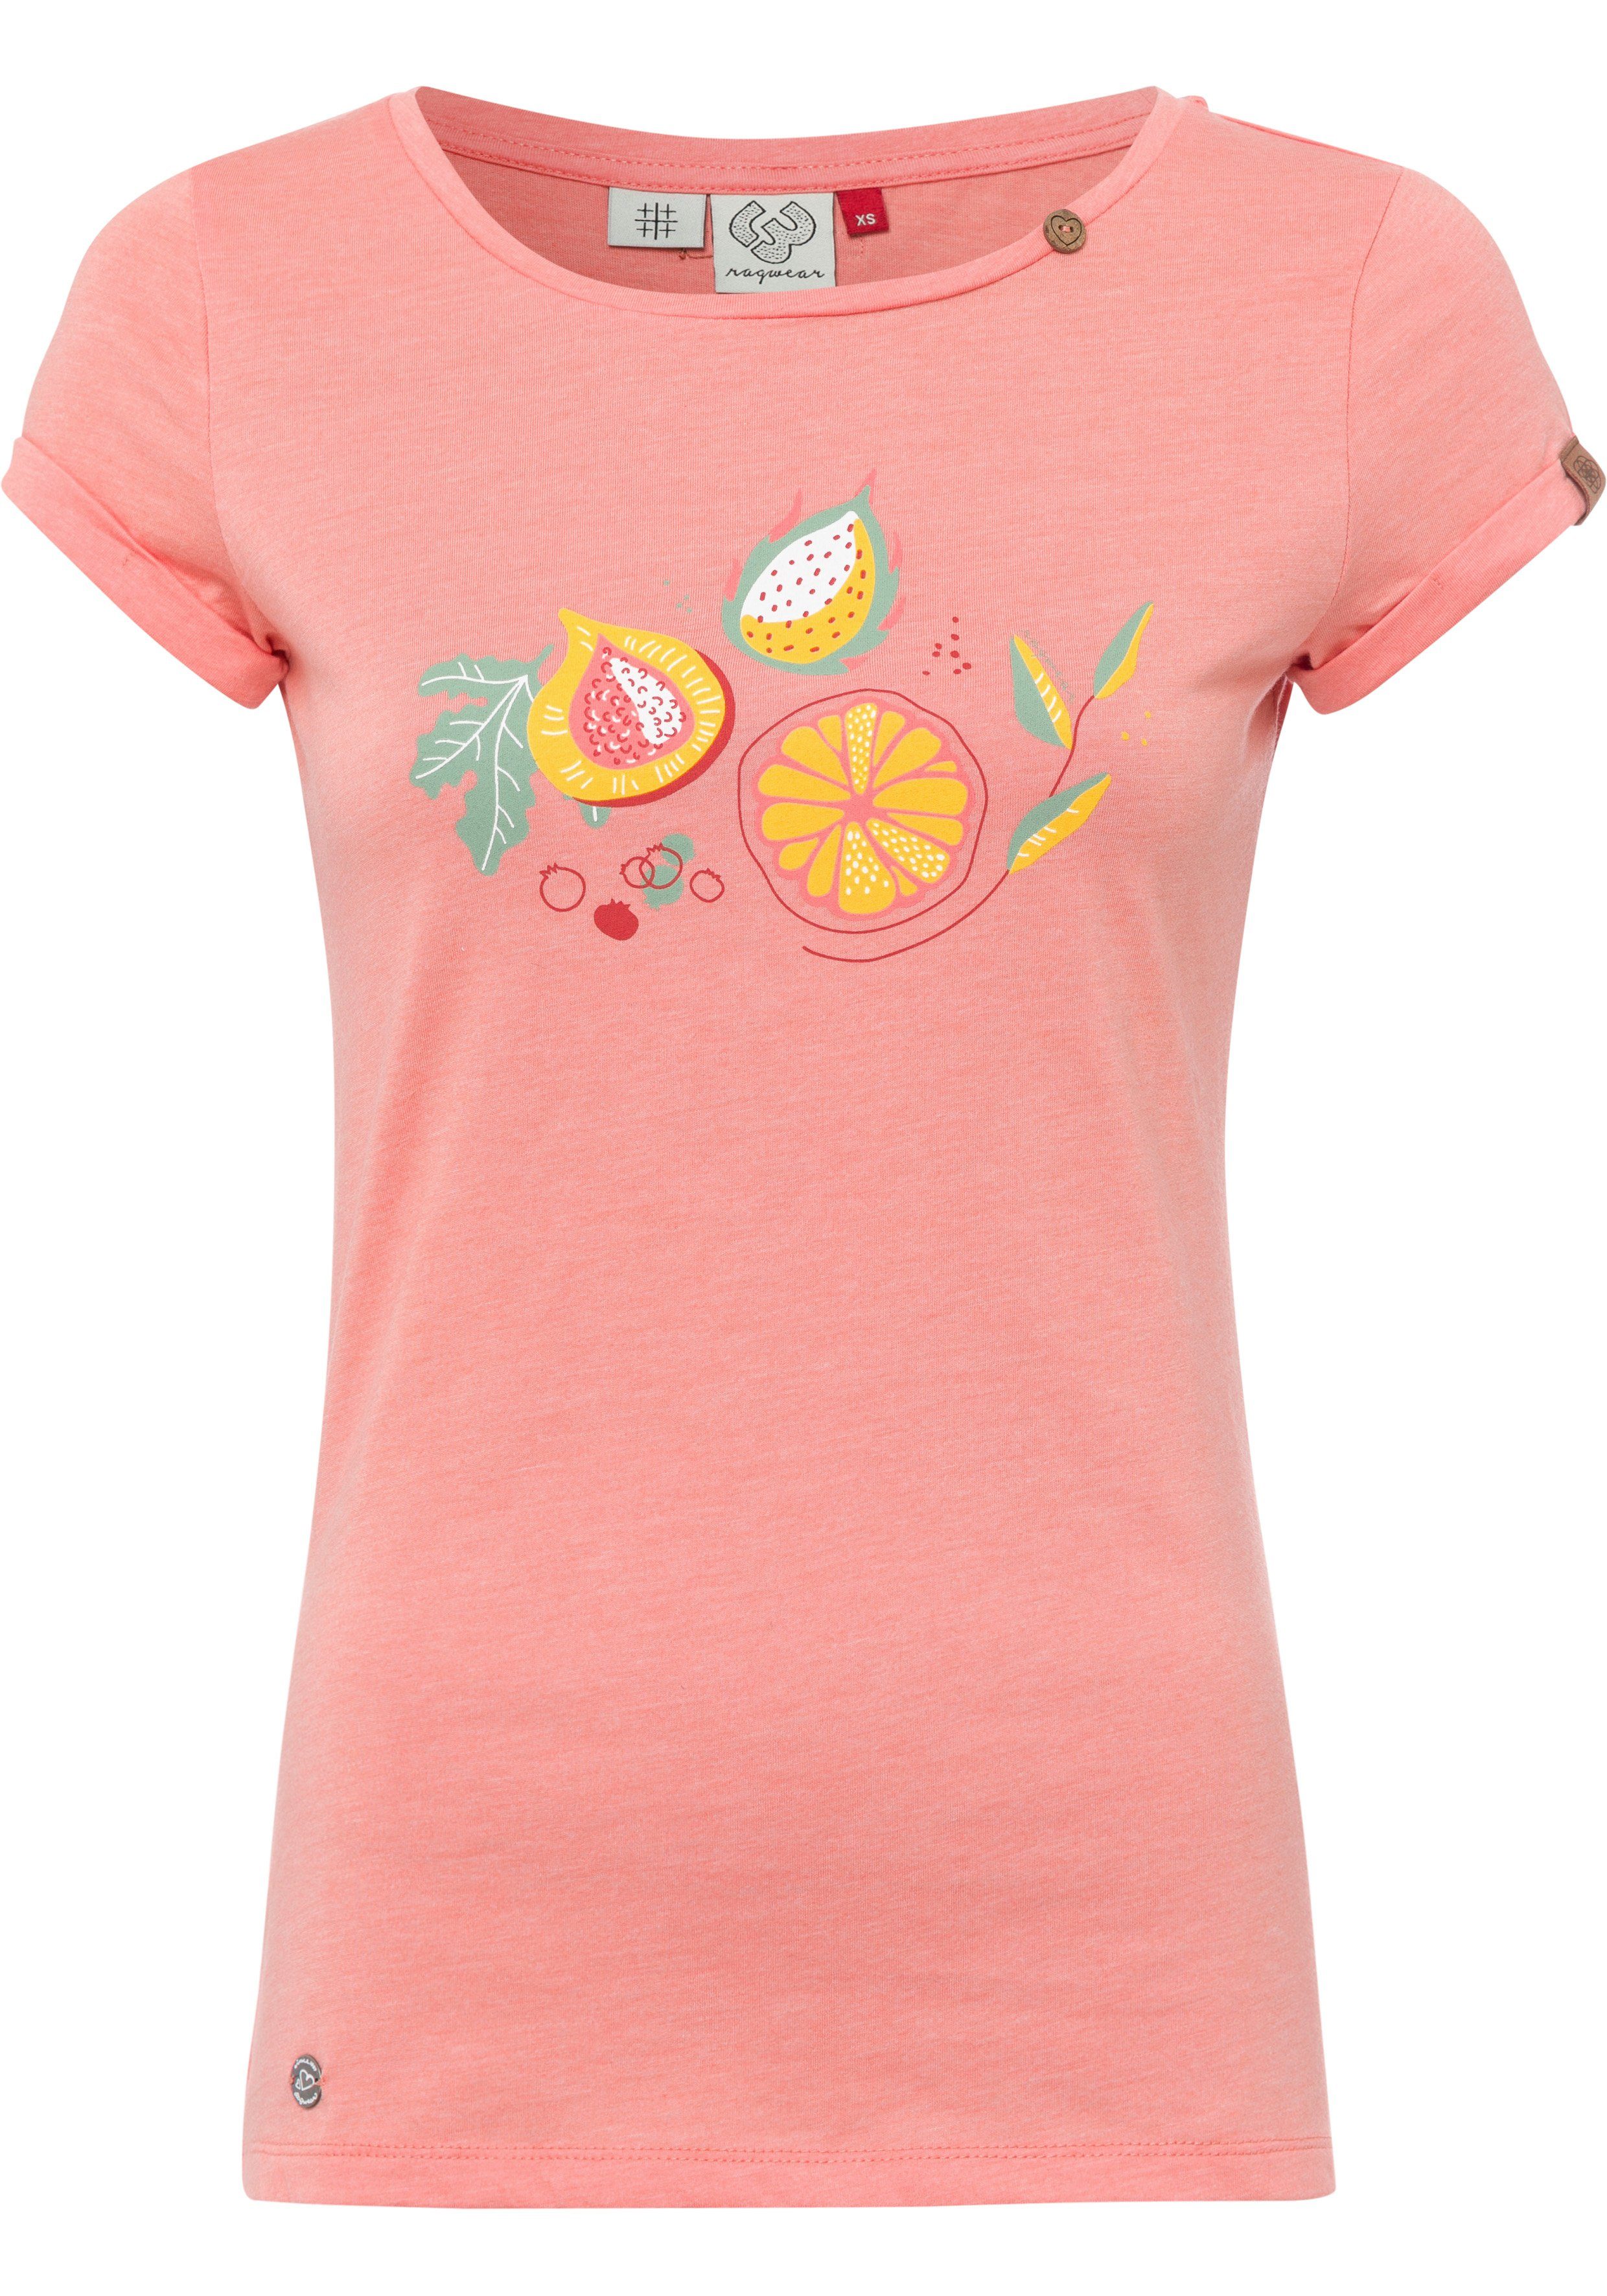 [Neu eingeführt] Ragwear T-Shirt PRINT coral Front-Print MINT mit 4005